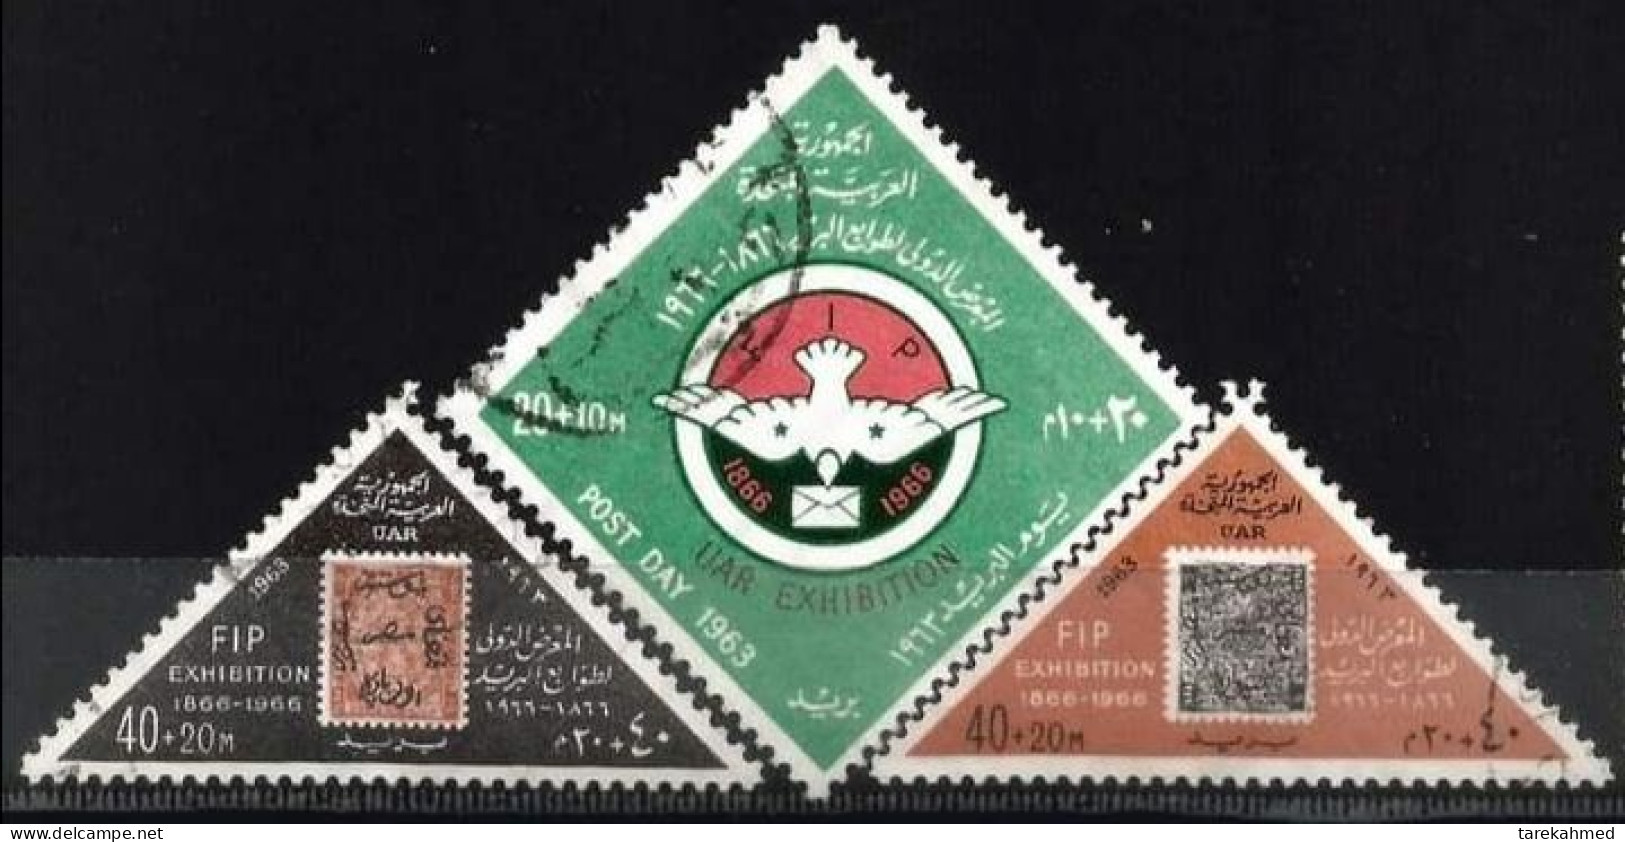 EGYPTE 1963, FIP & UAR Exhibition, YVERT N°555/57, VF - Gebruikt